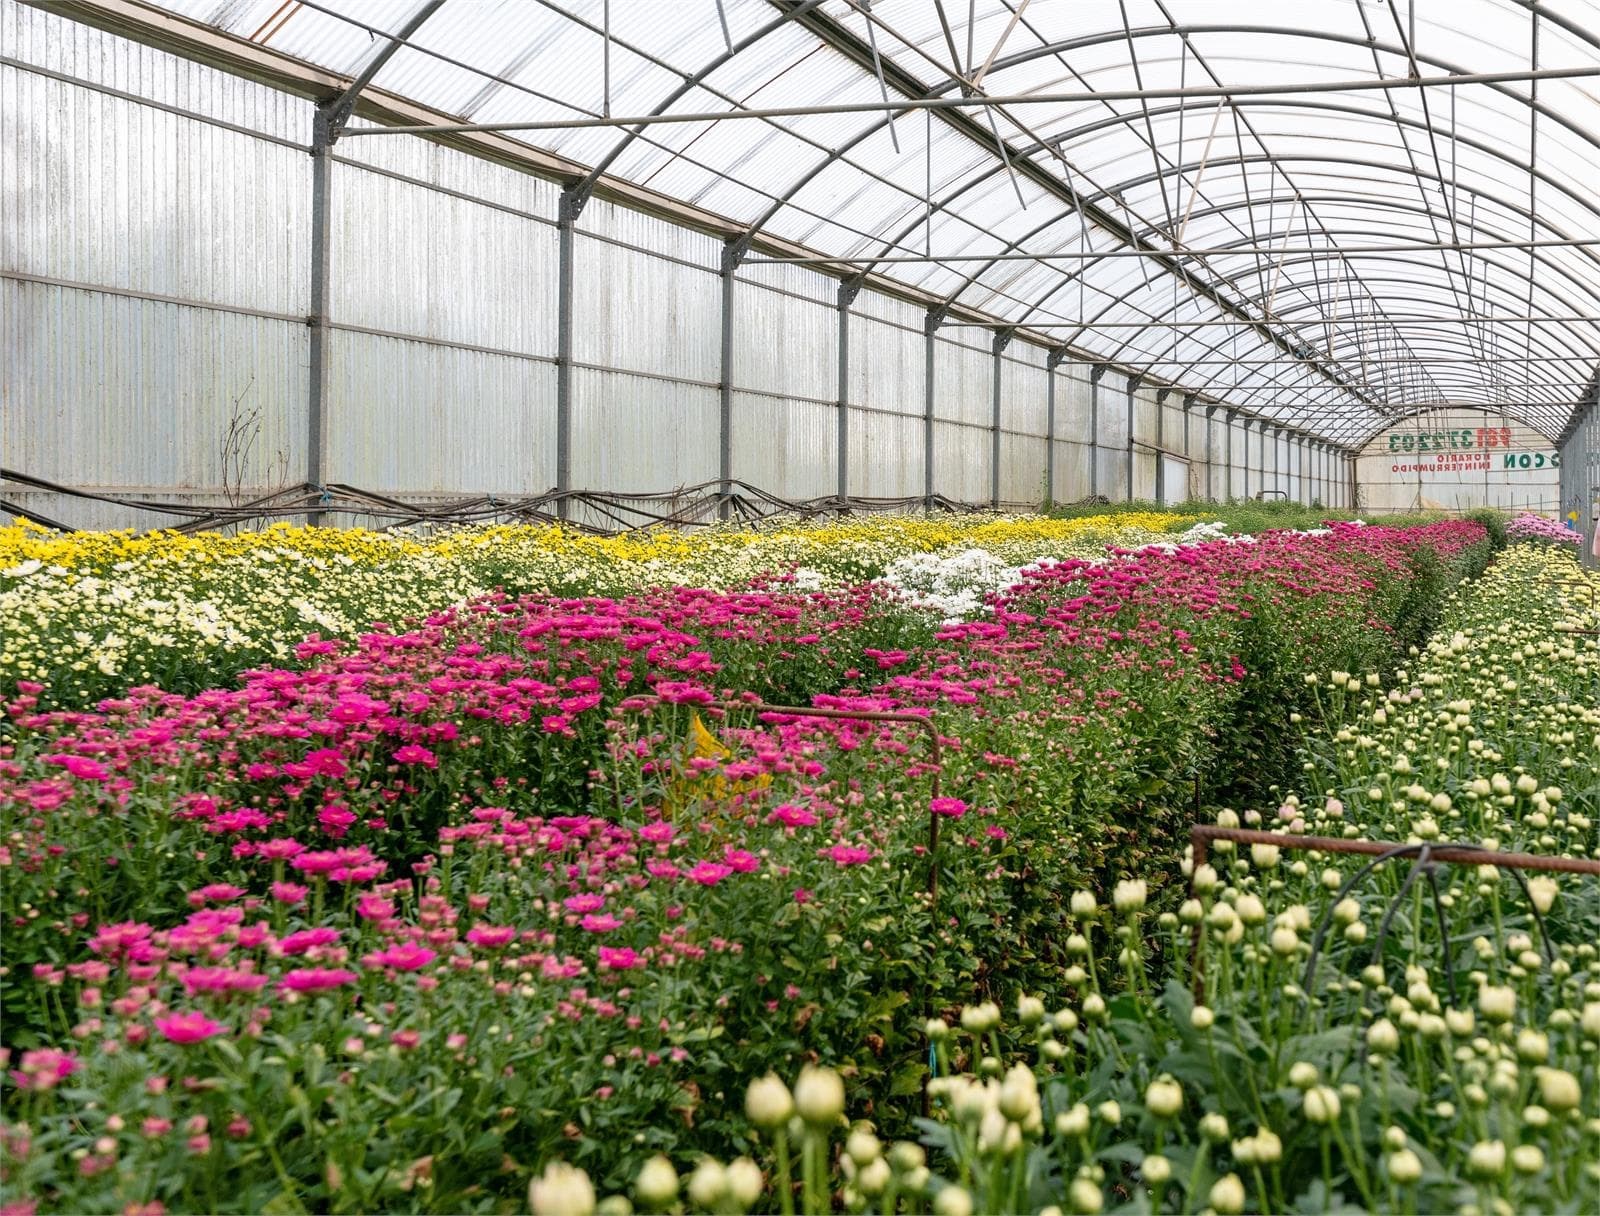 Floristería Alba: contamos con invernaderos propios para ofrecer las flores más frescas - Imagen 1